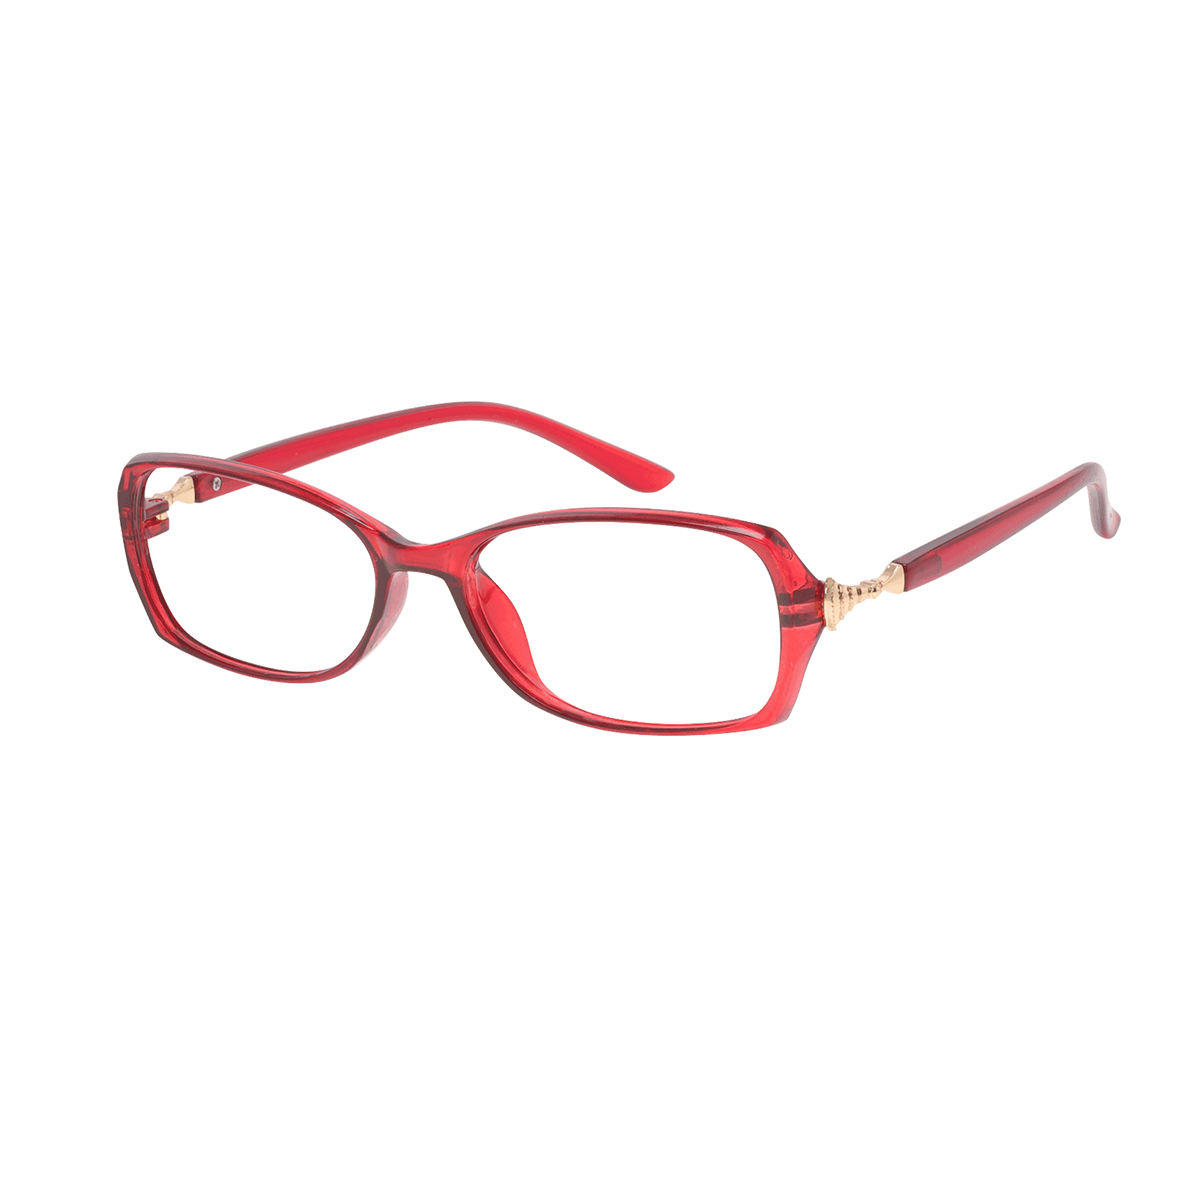 Audsley - Rectangle Red Reading Glasses for Women